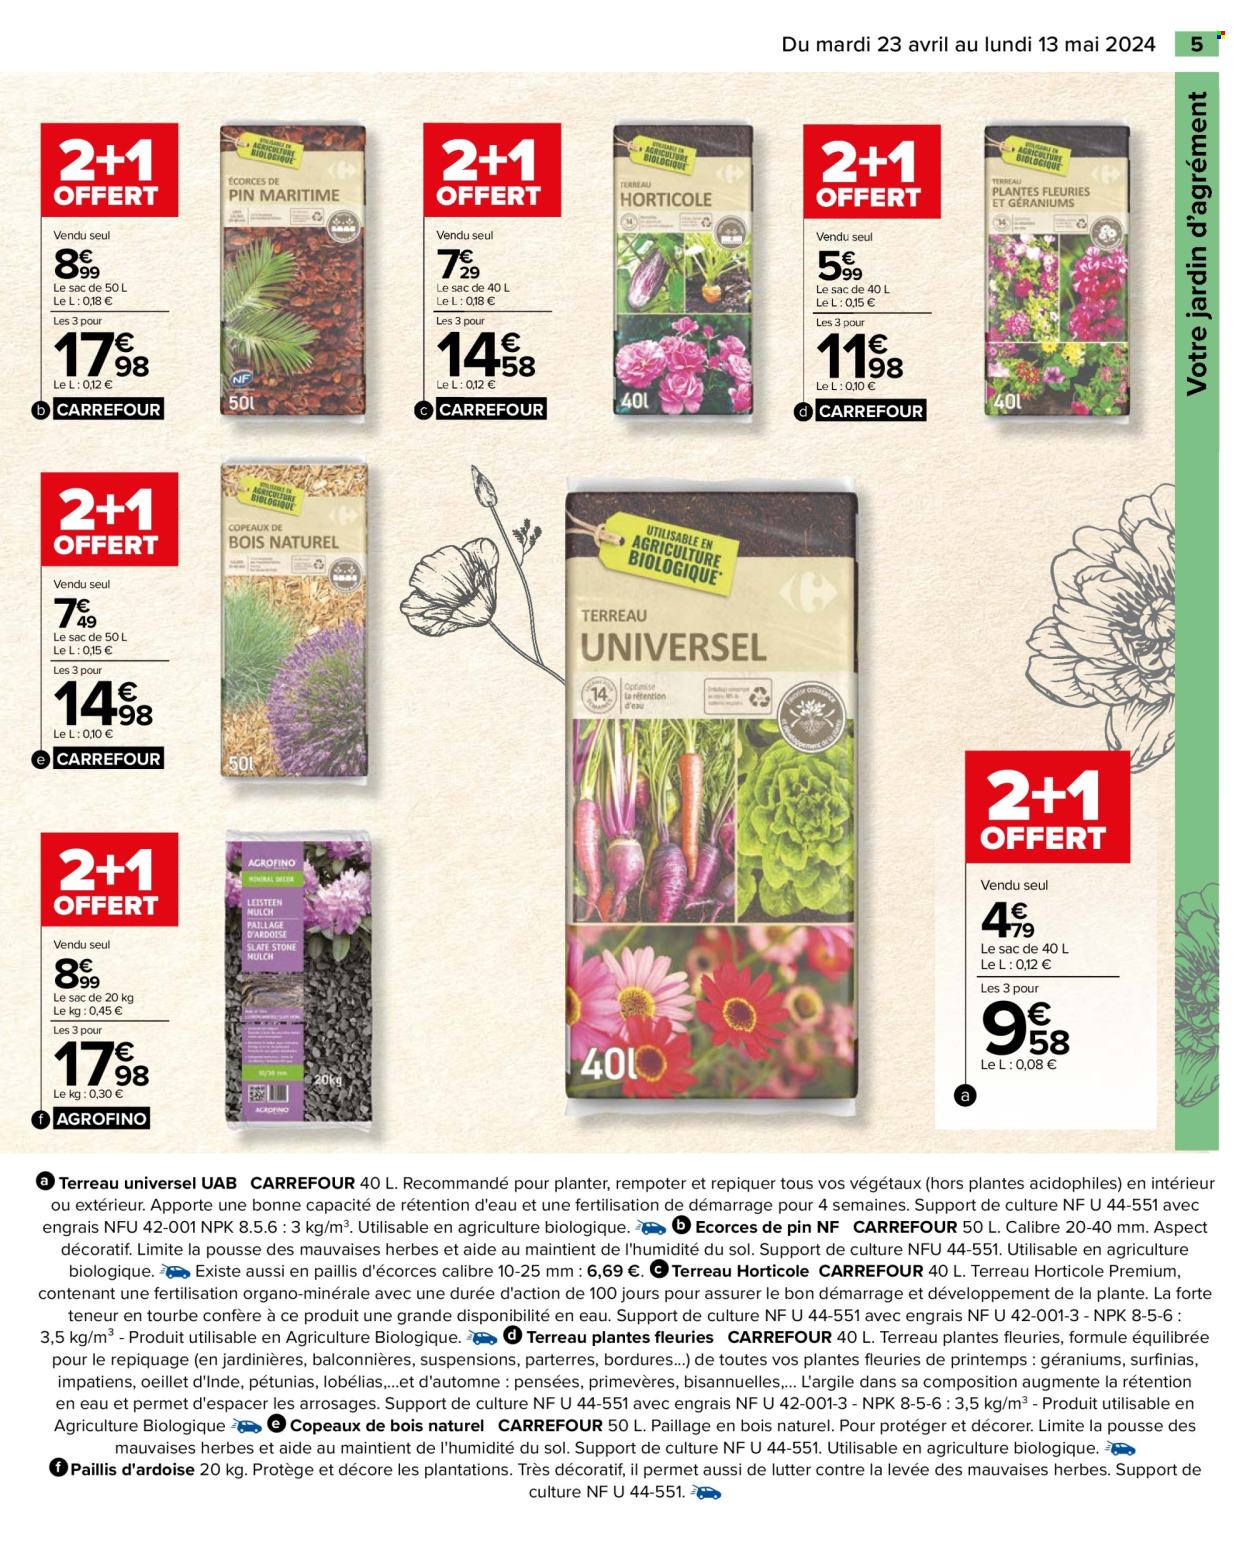 thumbnail - Catalogue Carrefour Hypermarchés - 23/04/2024 - 13/05/2024 - Produits soldés - écorce de pin, terreau, fleur, plante fleurie, plaquette de bois, paillis ardoise. Page 7.